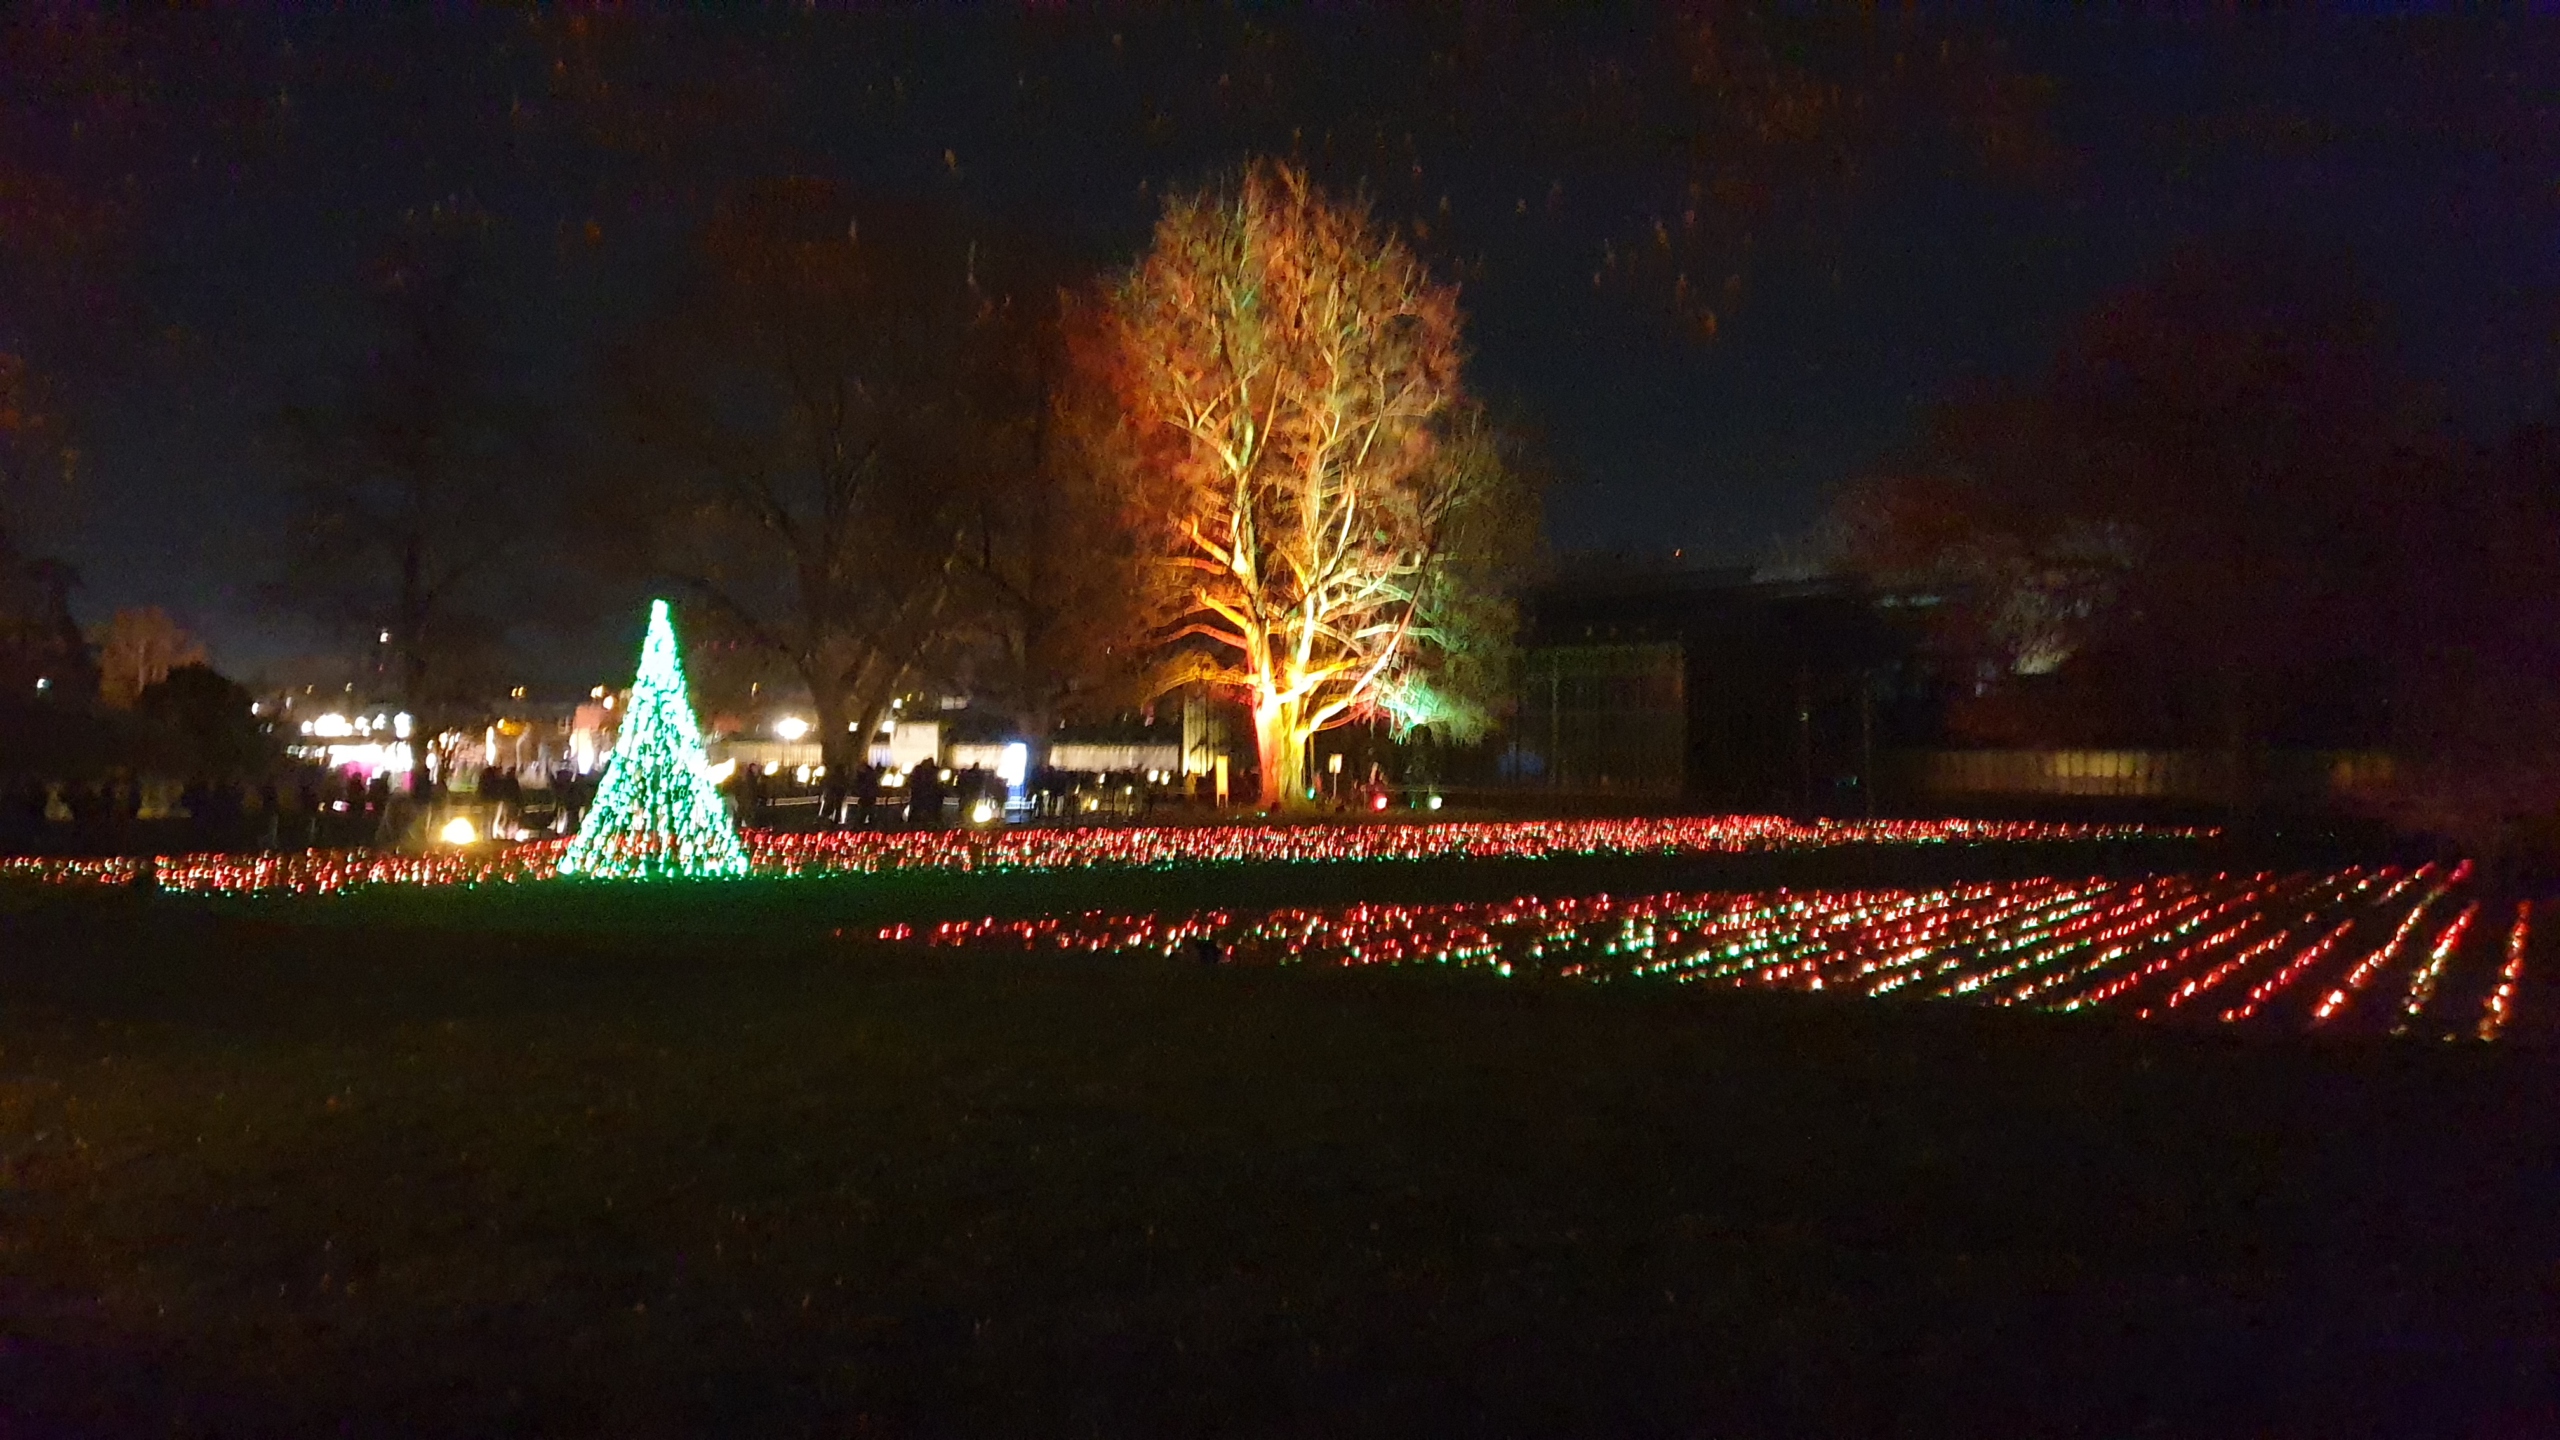 Bild zeigt eine weihnachtliche Illumination mit einem beleuchteten Baum, einem Lichtermeer auf einer Wiese und einem Weihnachtsbaum im Lichterglanz vom Christmas Garden in Stuttgart.